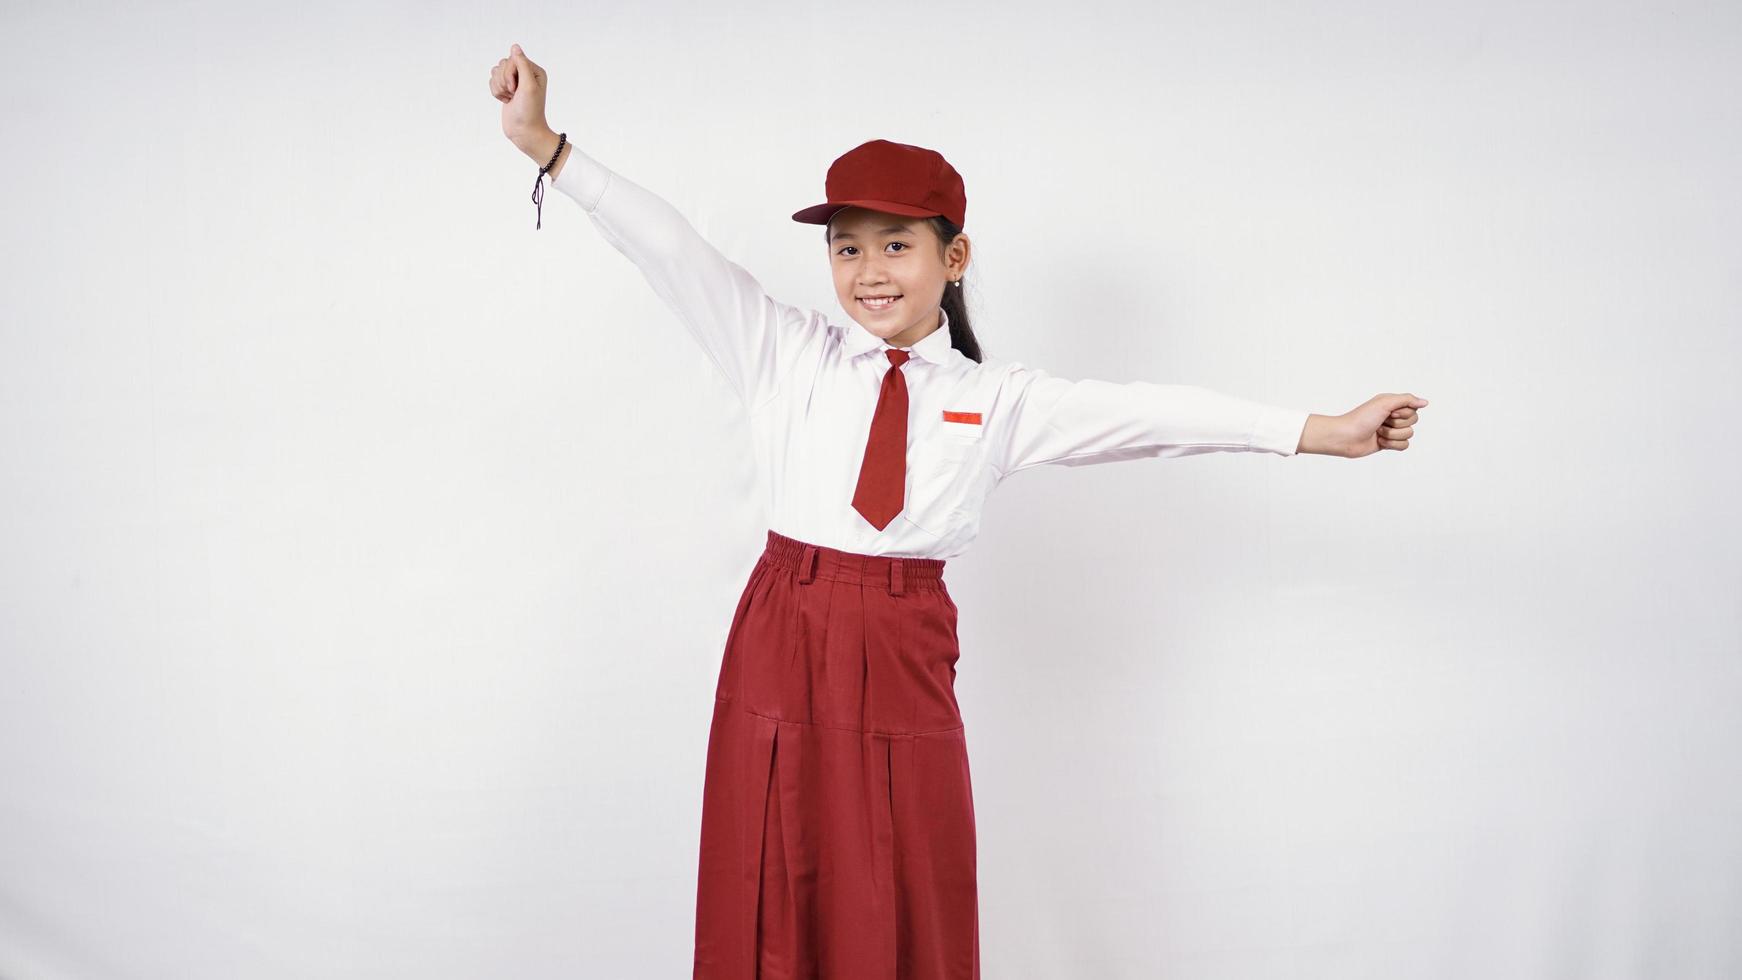 Vrij gelukkig basisschoolmeisje dat op witte achtergrond wordt geïsoleerd foto